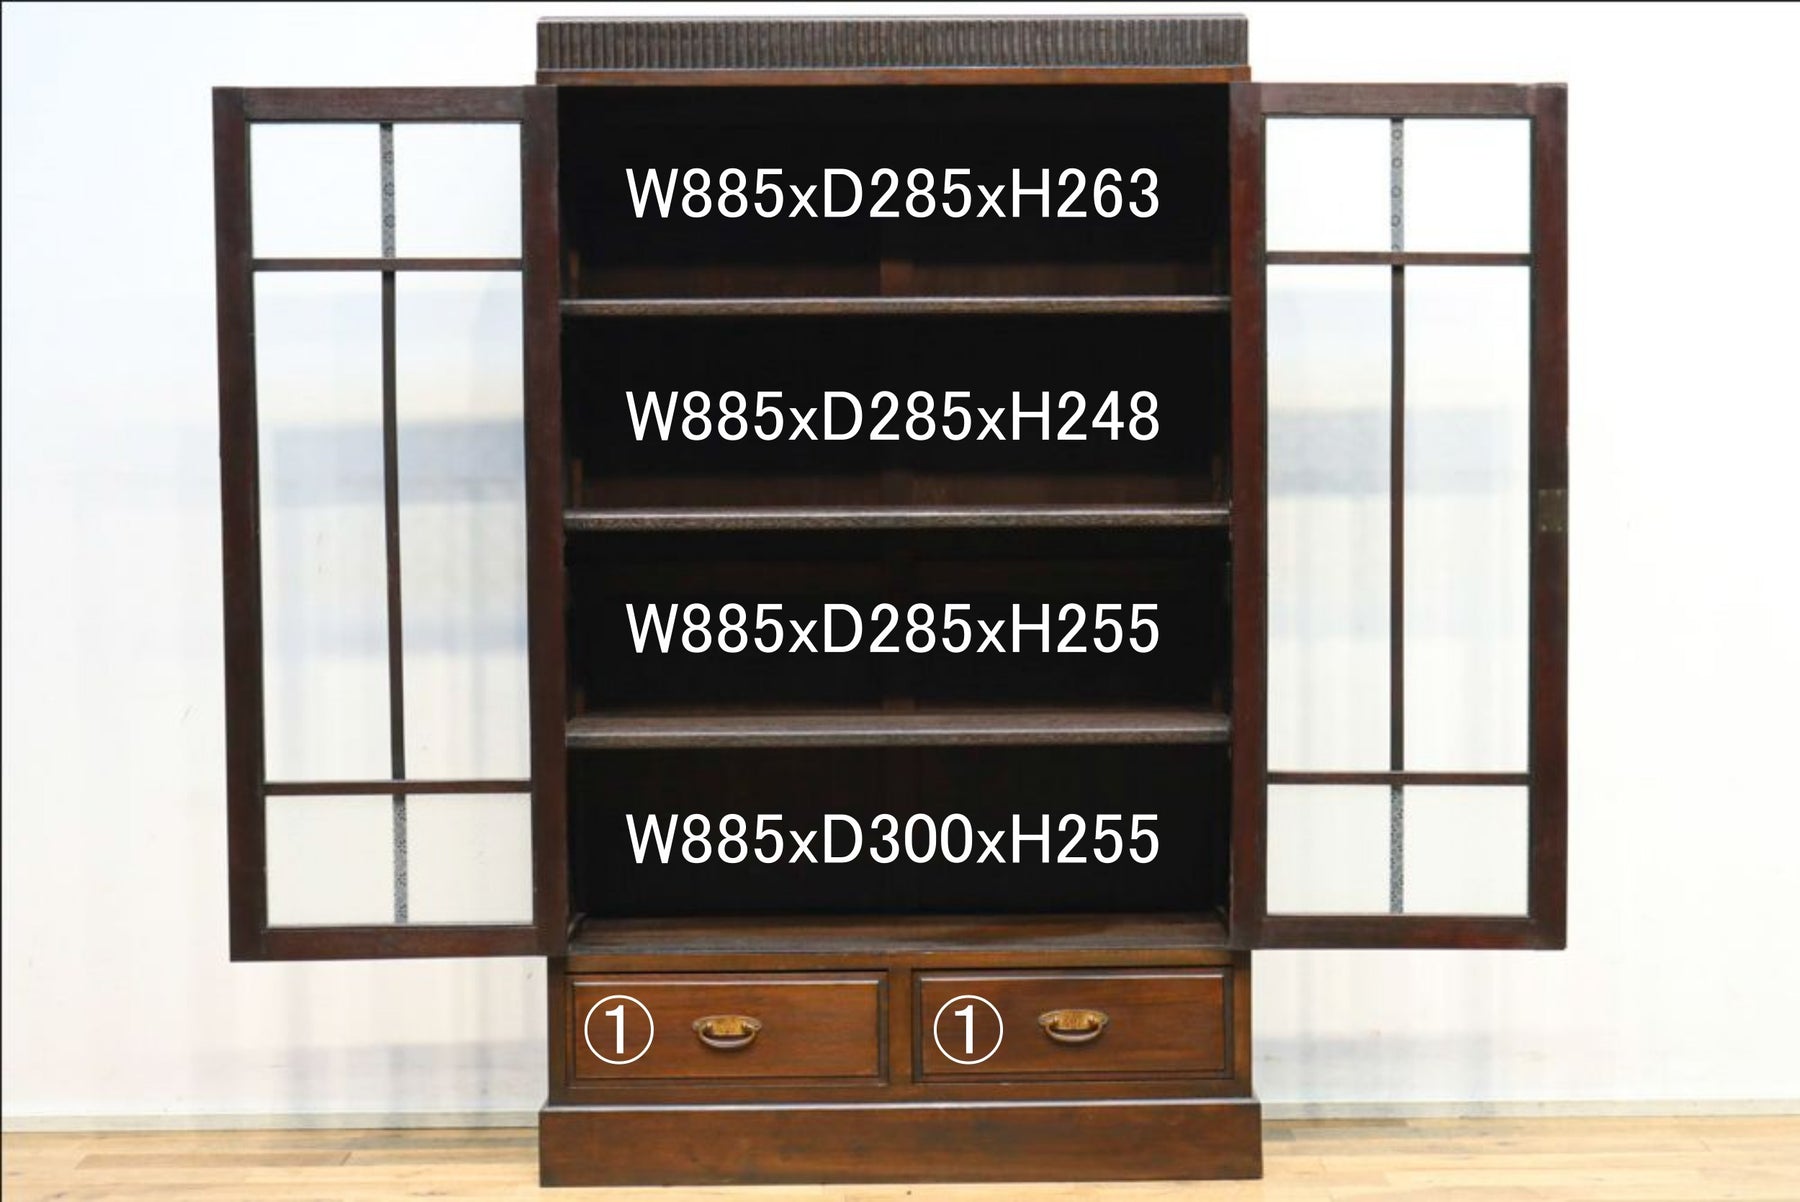 装飾性のあるレトロ金具が素敵な観音扉の本棚　BB1655